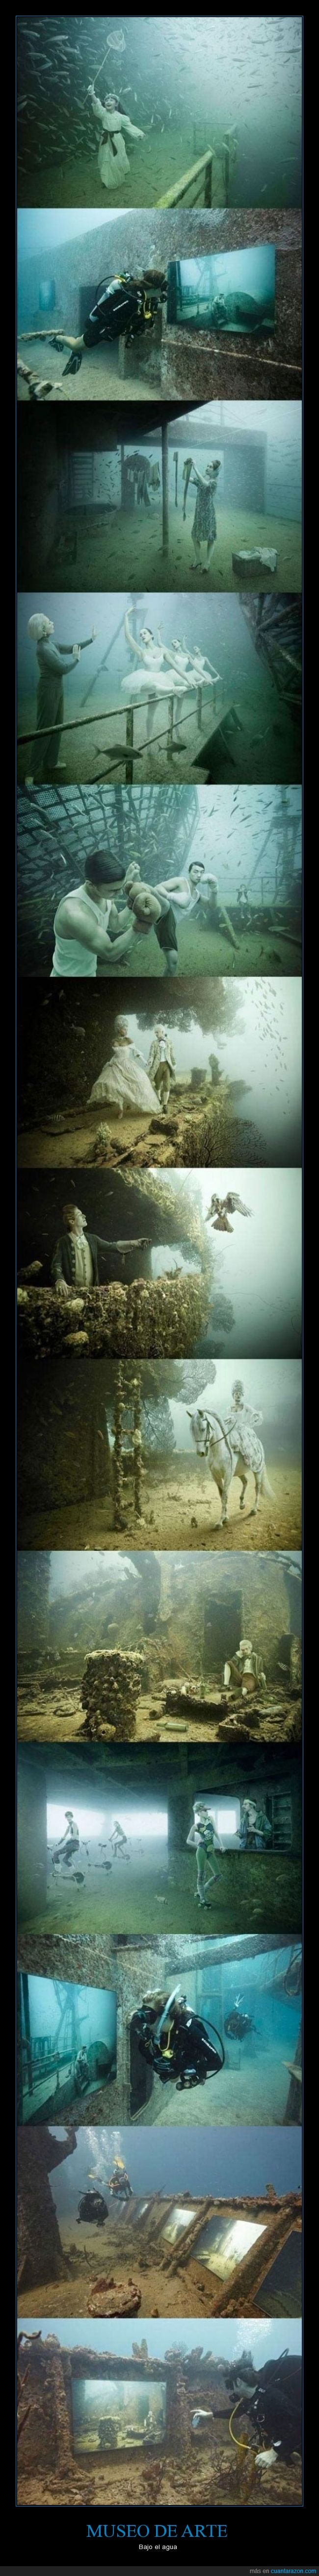 bajo el agua,mar,museo de arte,profundidad